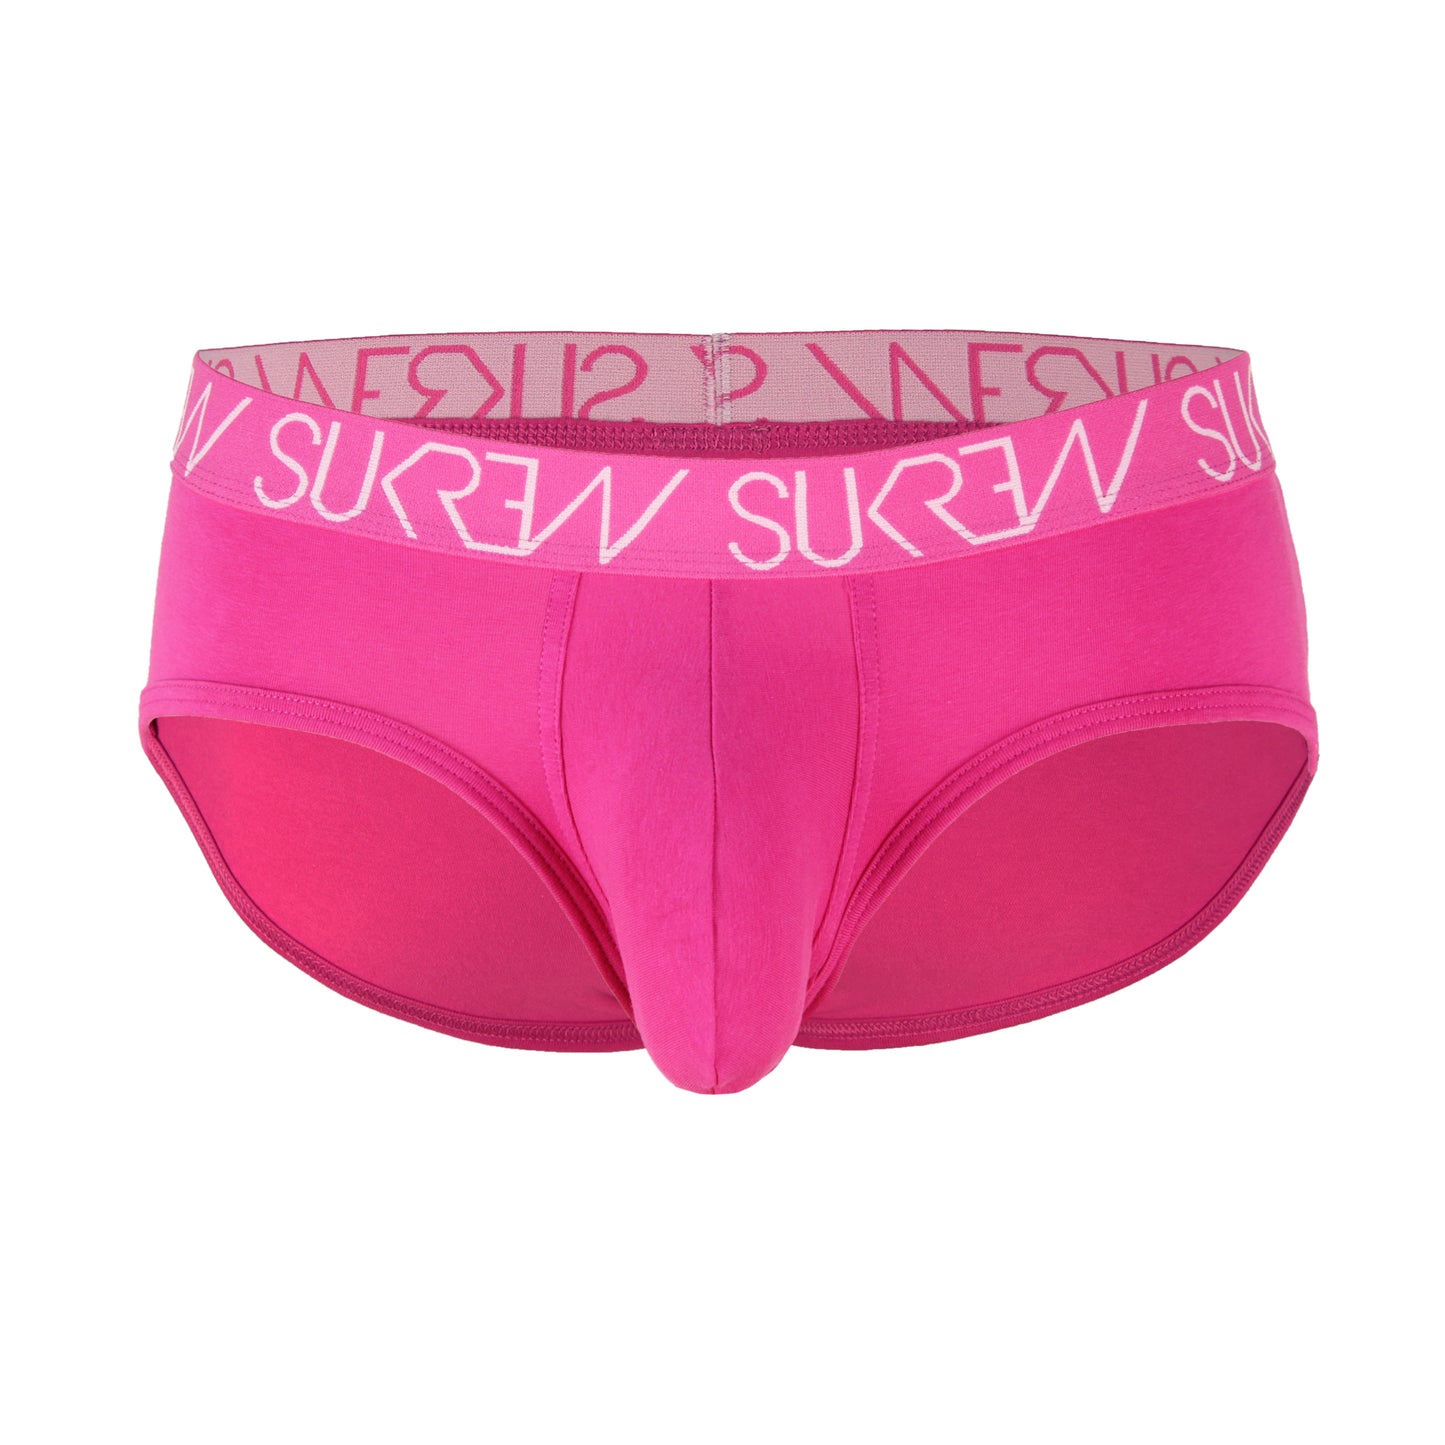 Sukrew - Apex Brief - Tropical Pink - Medium